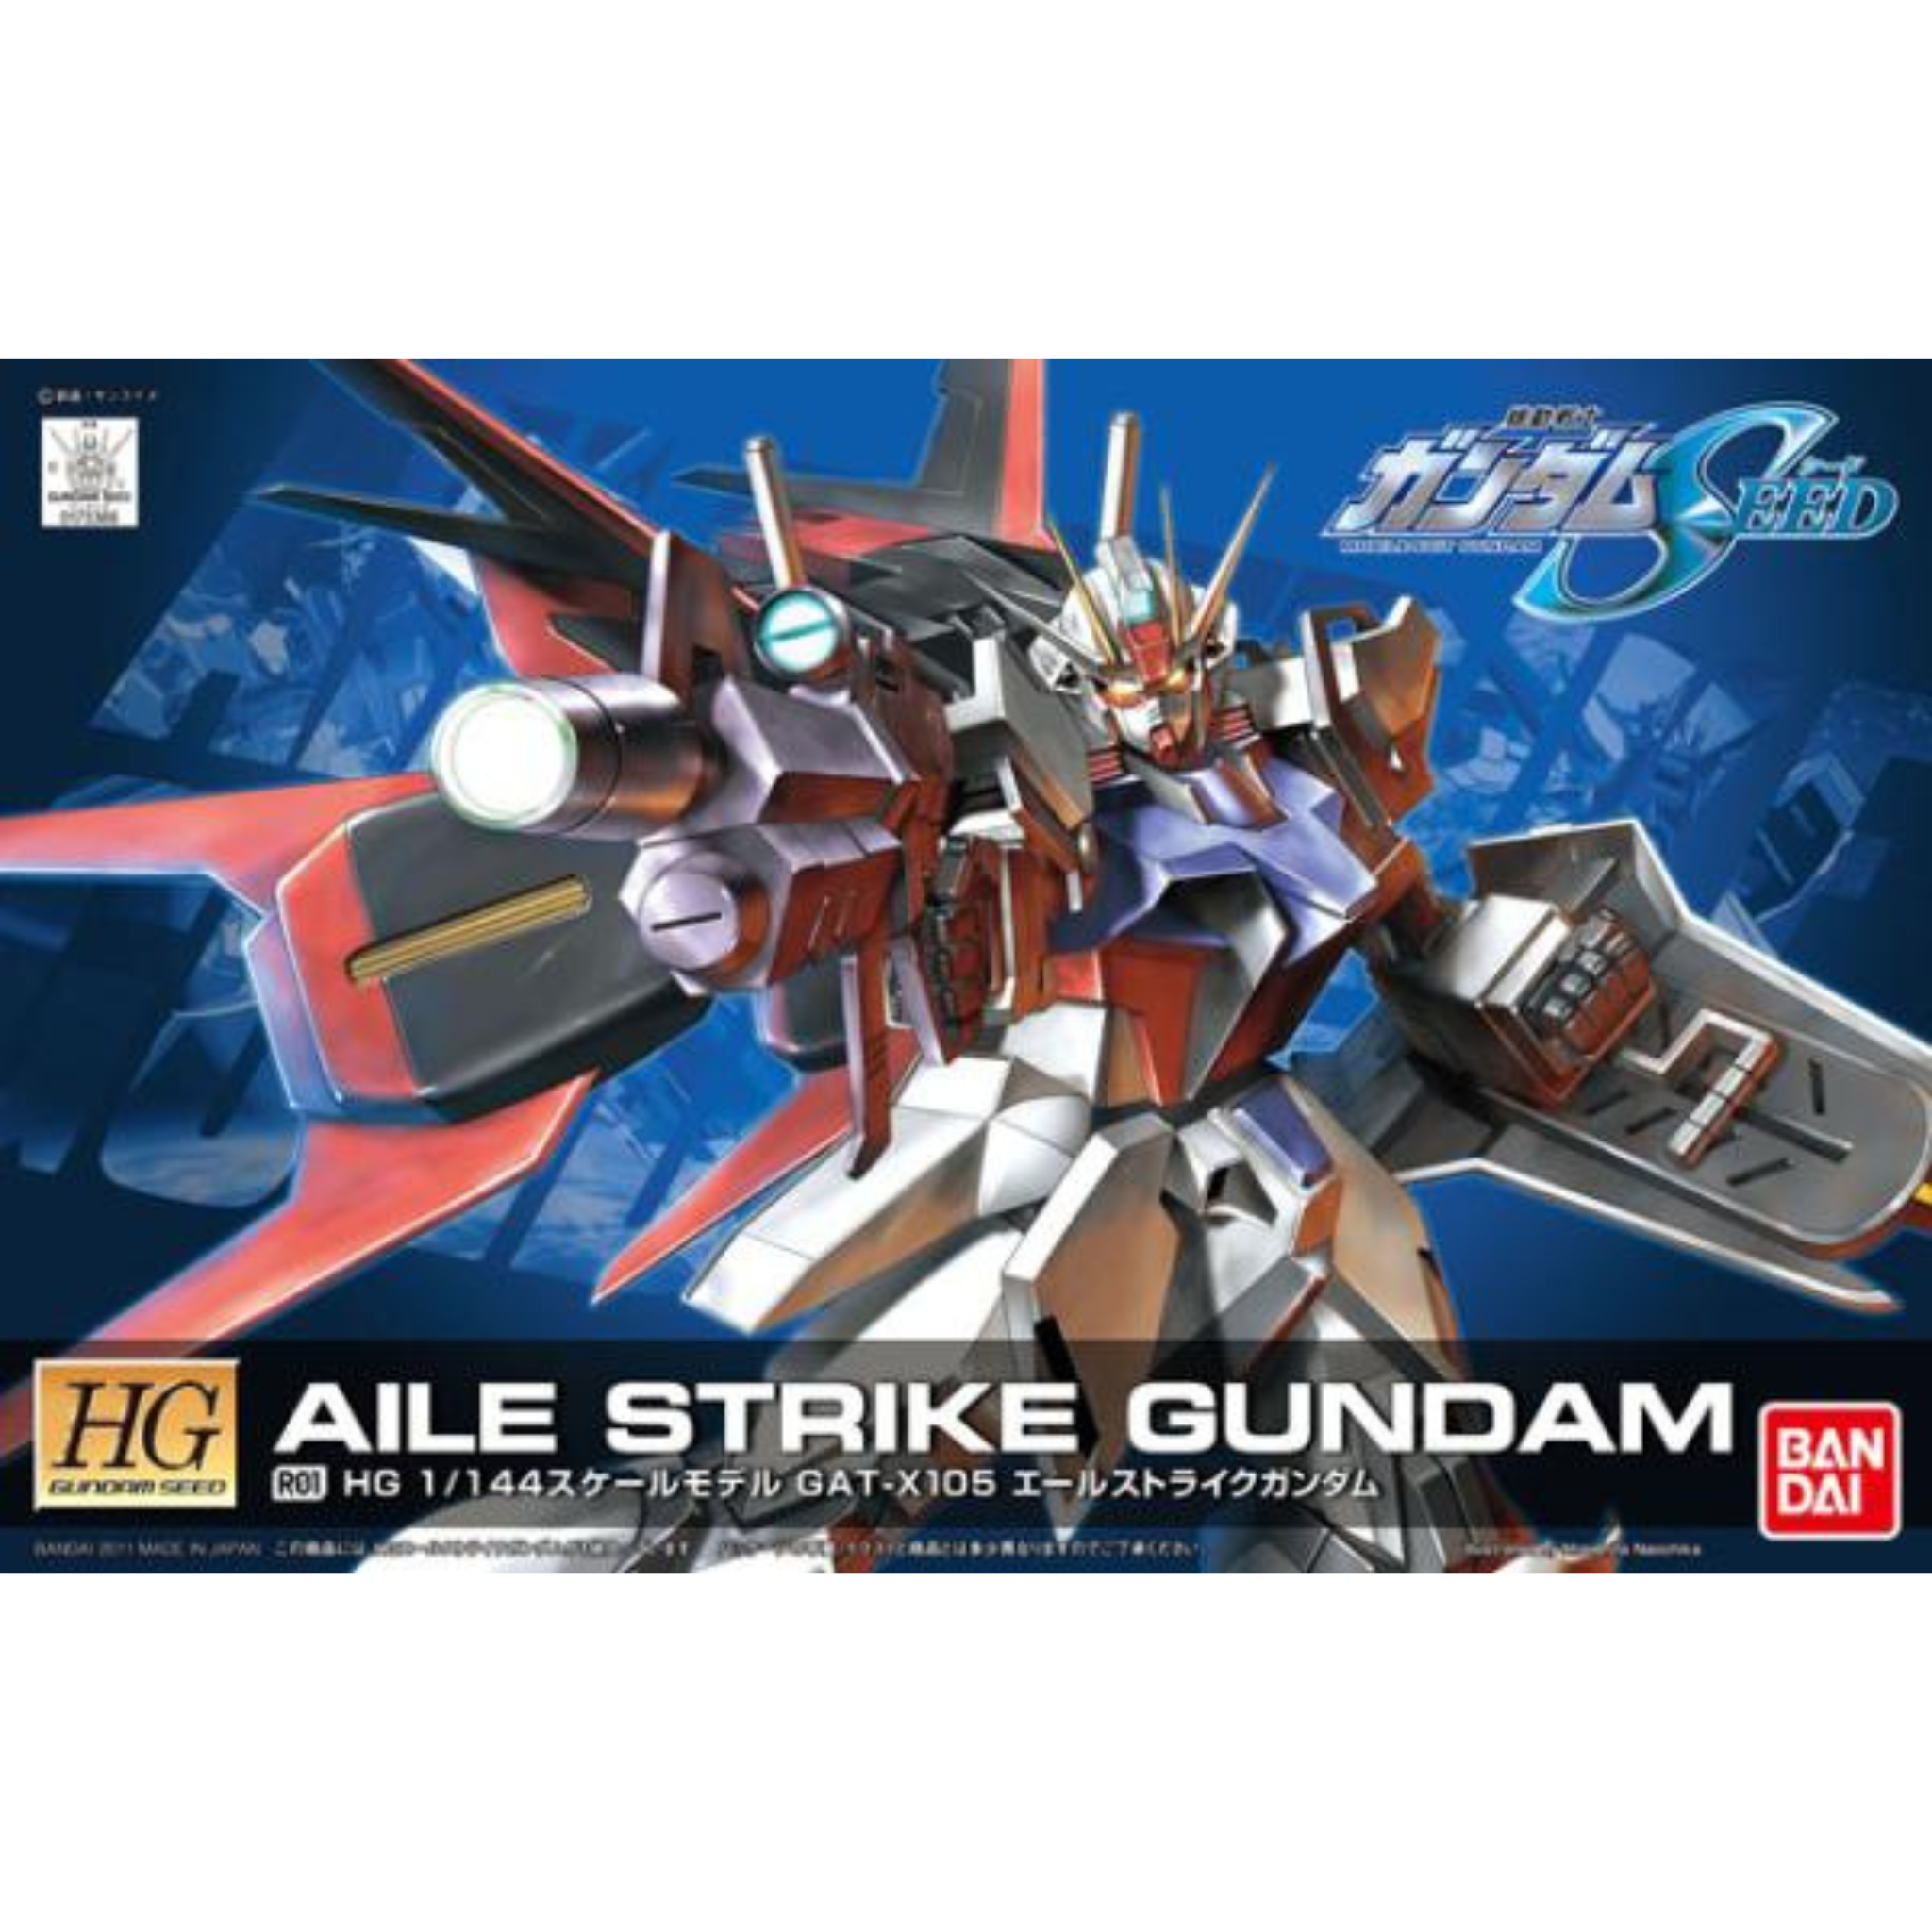 HG 1/144 SEED #R01 GAT-X105 Aile Strike Gundam #0173366 by Bandai